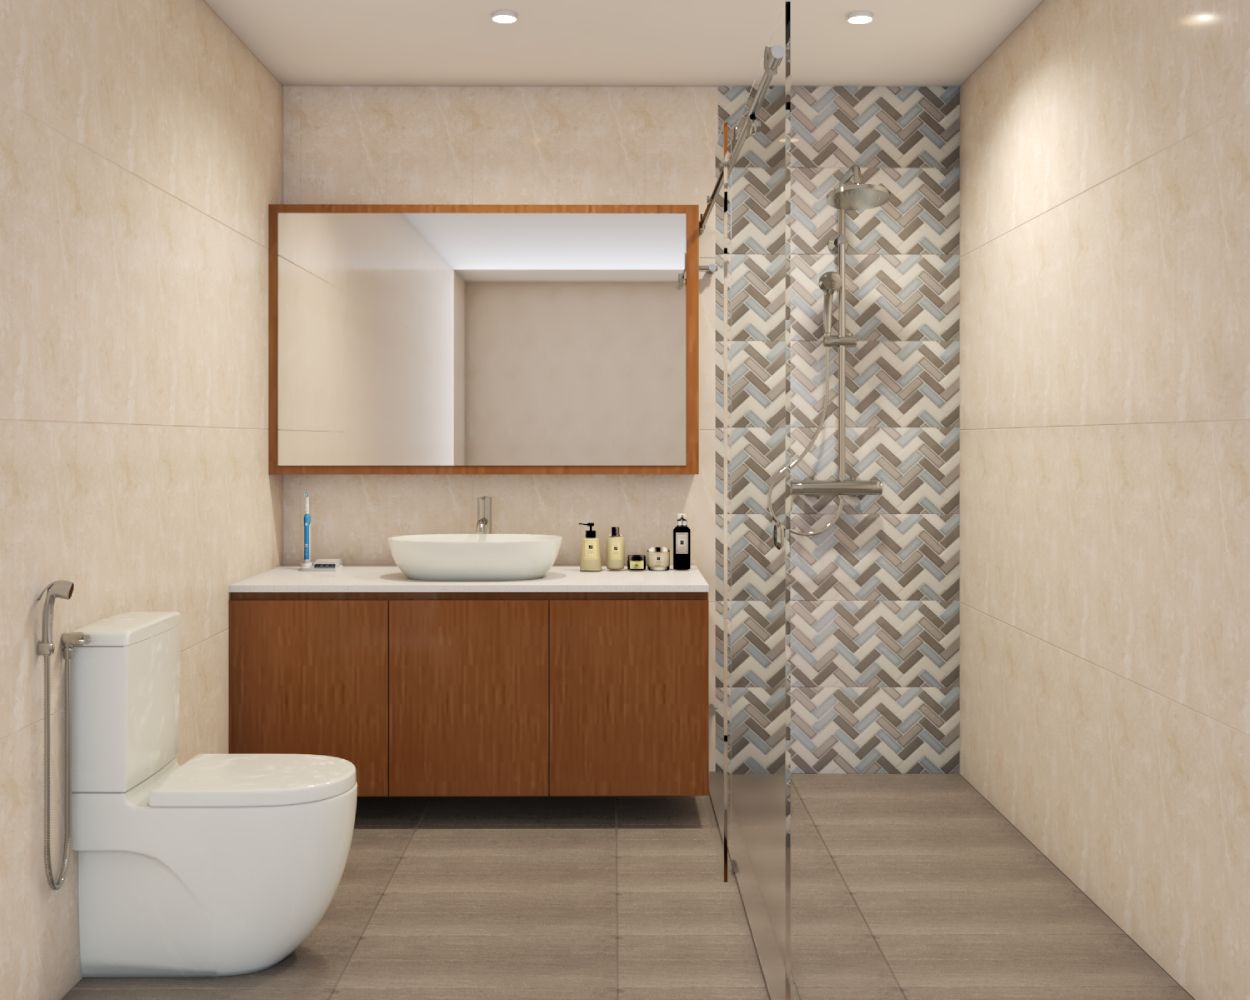 Modern Beige Bathroom Design With Patterned Tiles